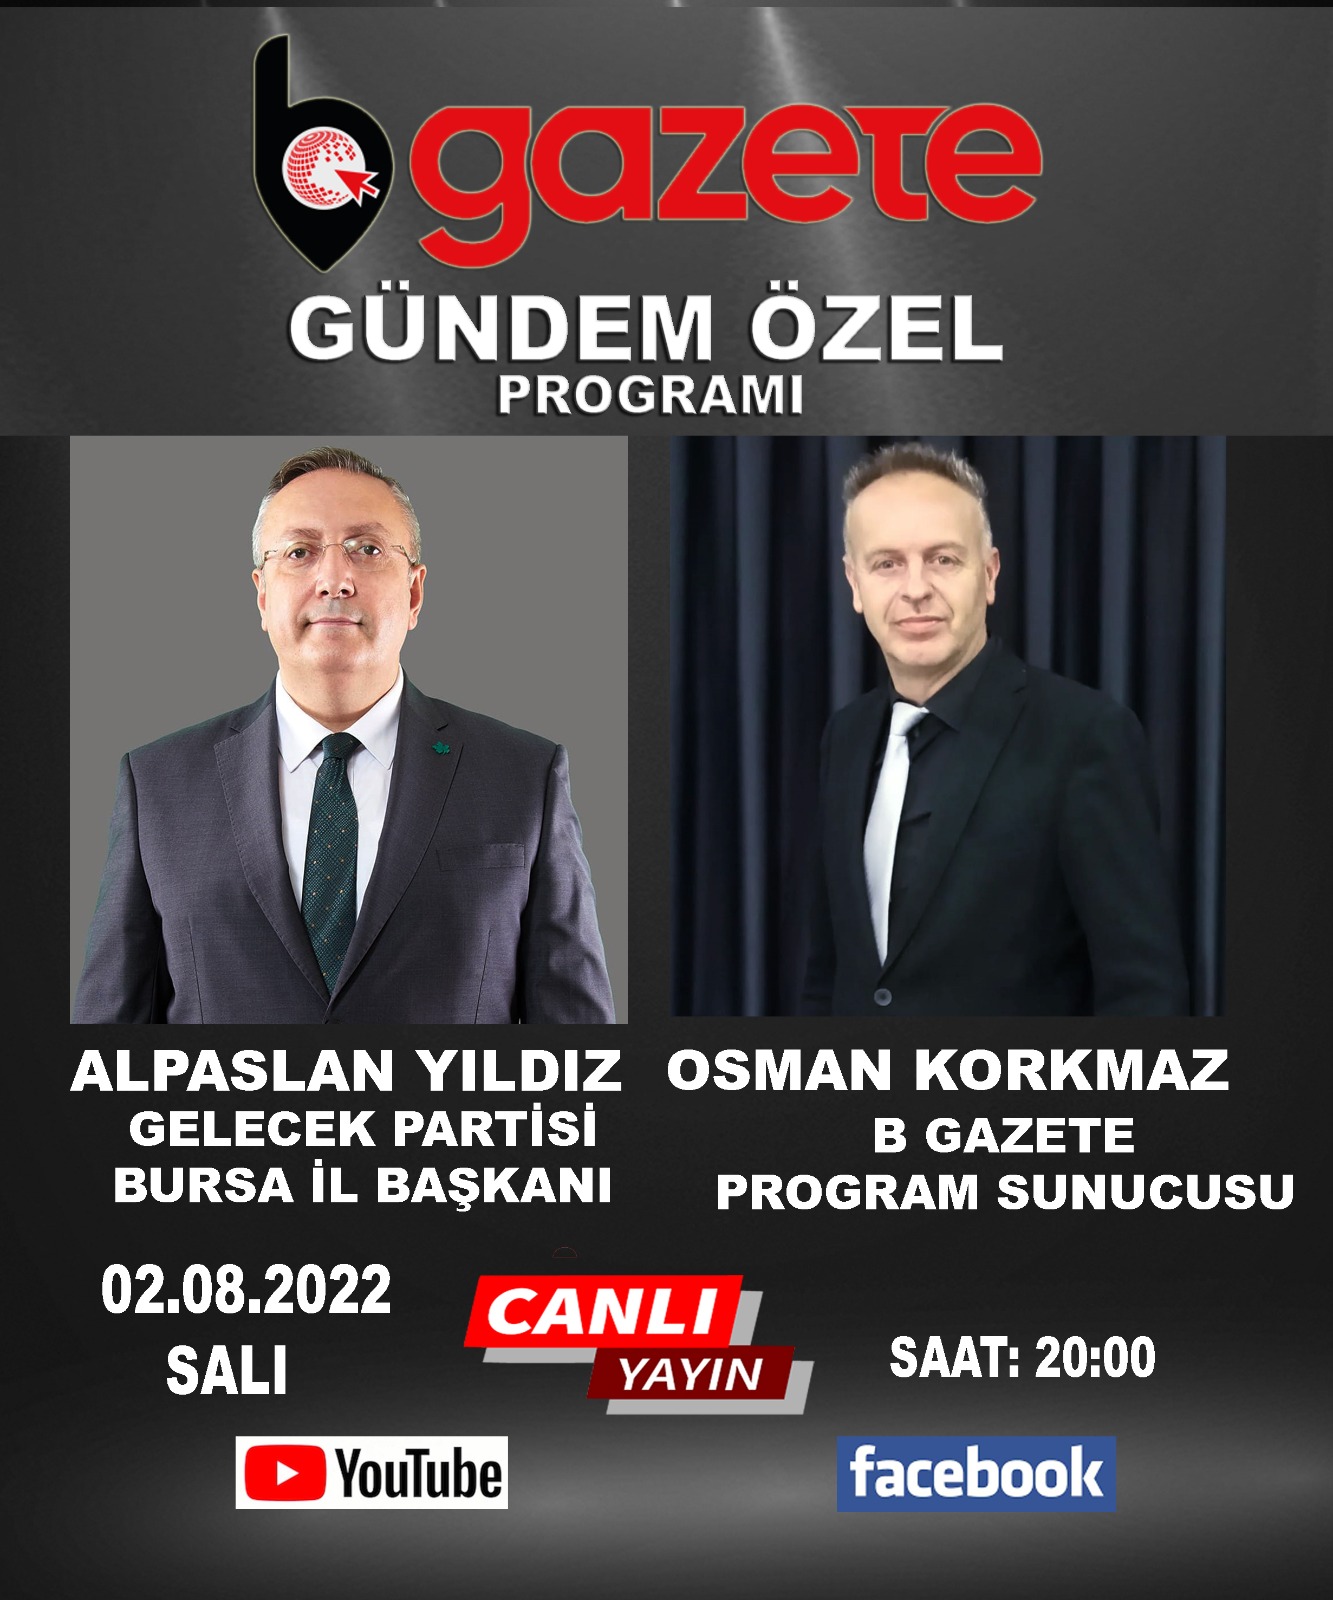 Sayın İl başkanımız Alpaslan Yıldız,Saat 20.00’da B Gazete de Osman Korkmaz’ın sunduğu gündem özel programına konuk olacaktır.Yayın YouTube ve Facebook’tan canlı olarak verilecektir.